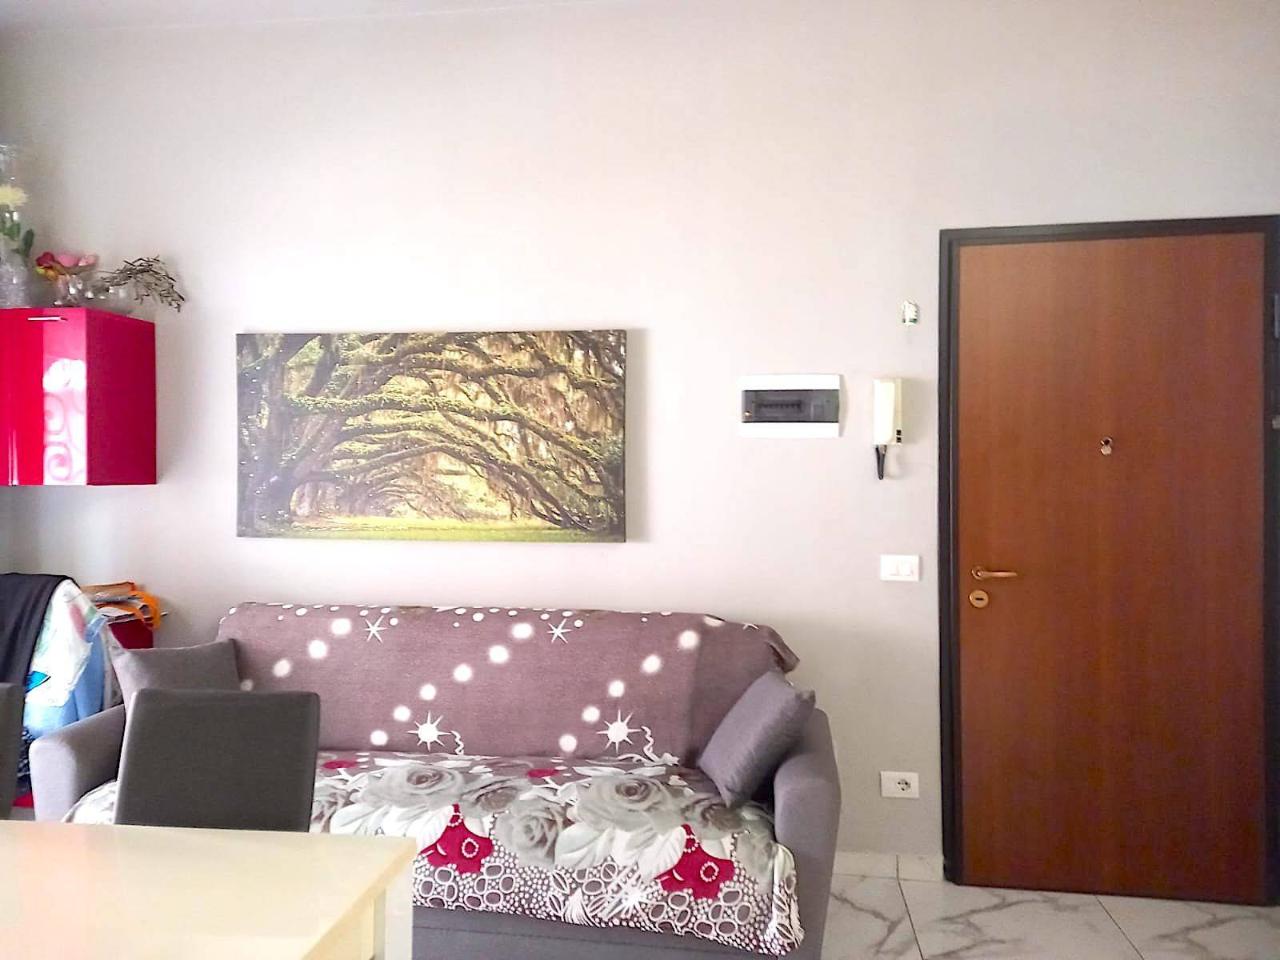 Appartamento in vendita a Piacenza